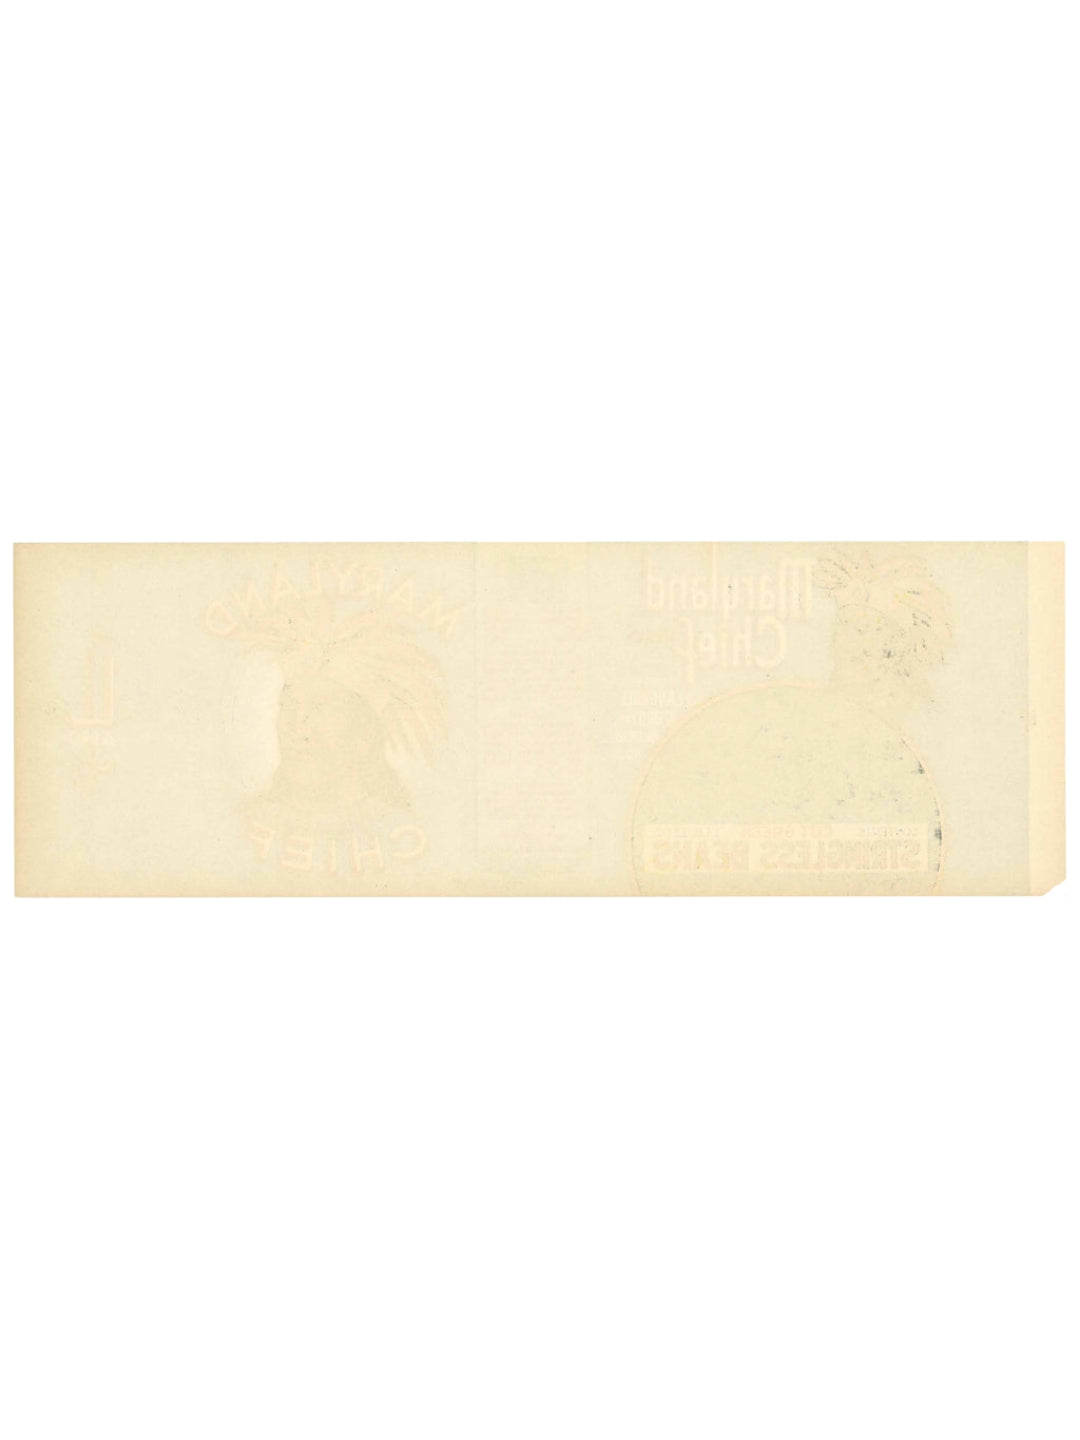 Vintage Bohnen Etikett “Maryland Chief” 1930er Jahre